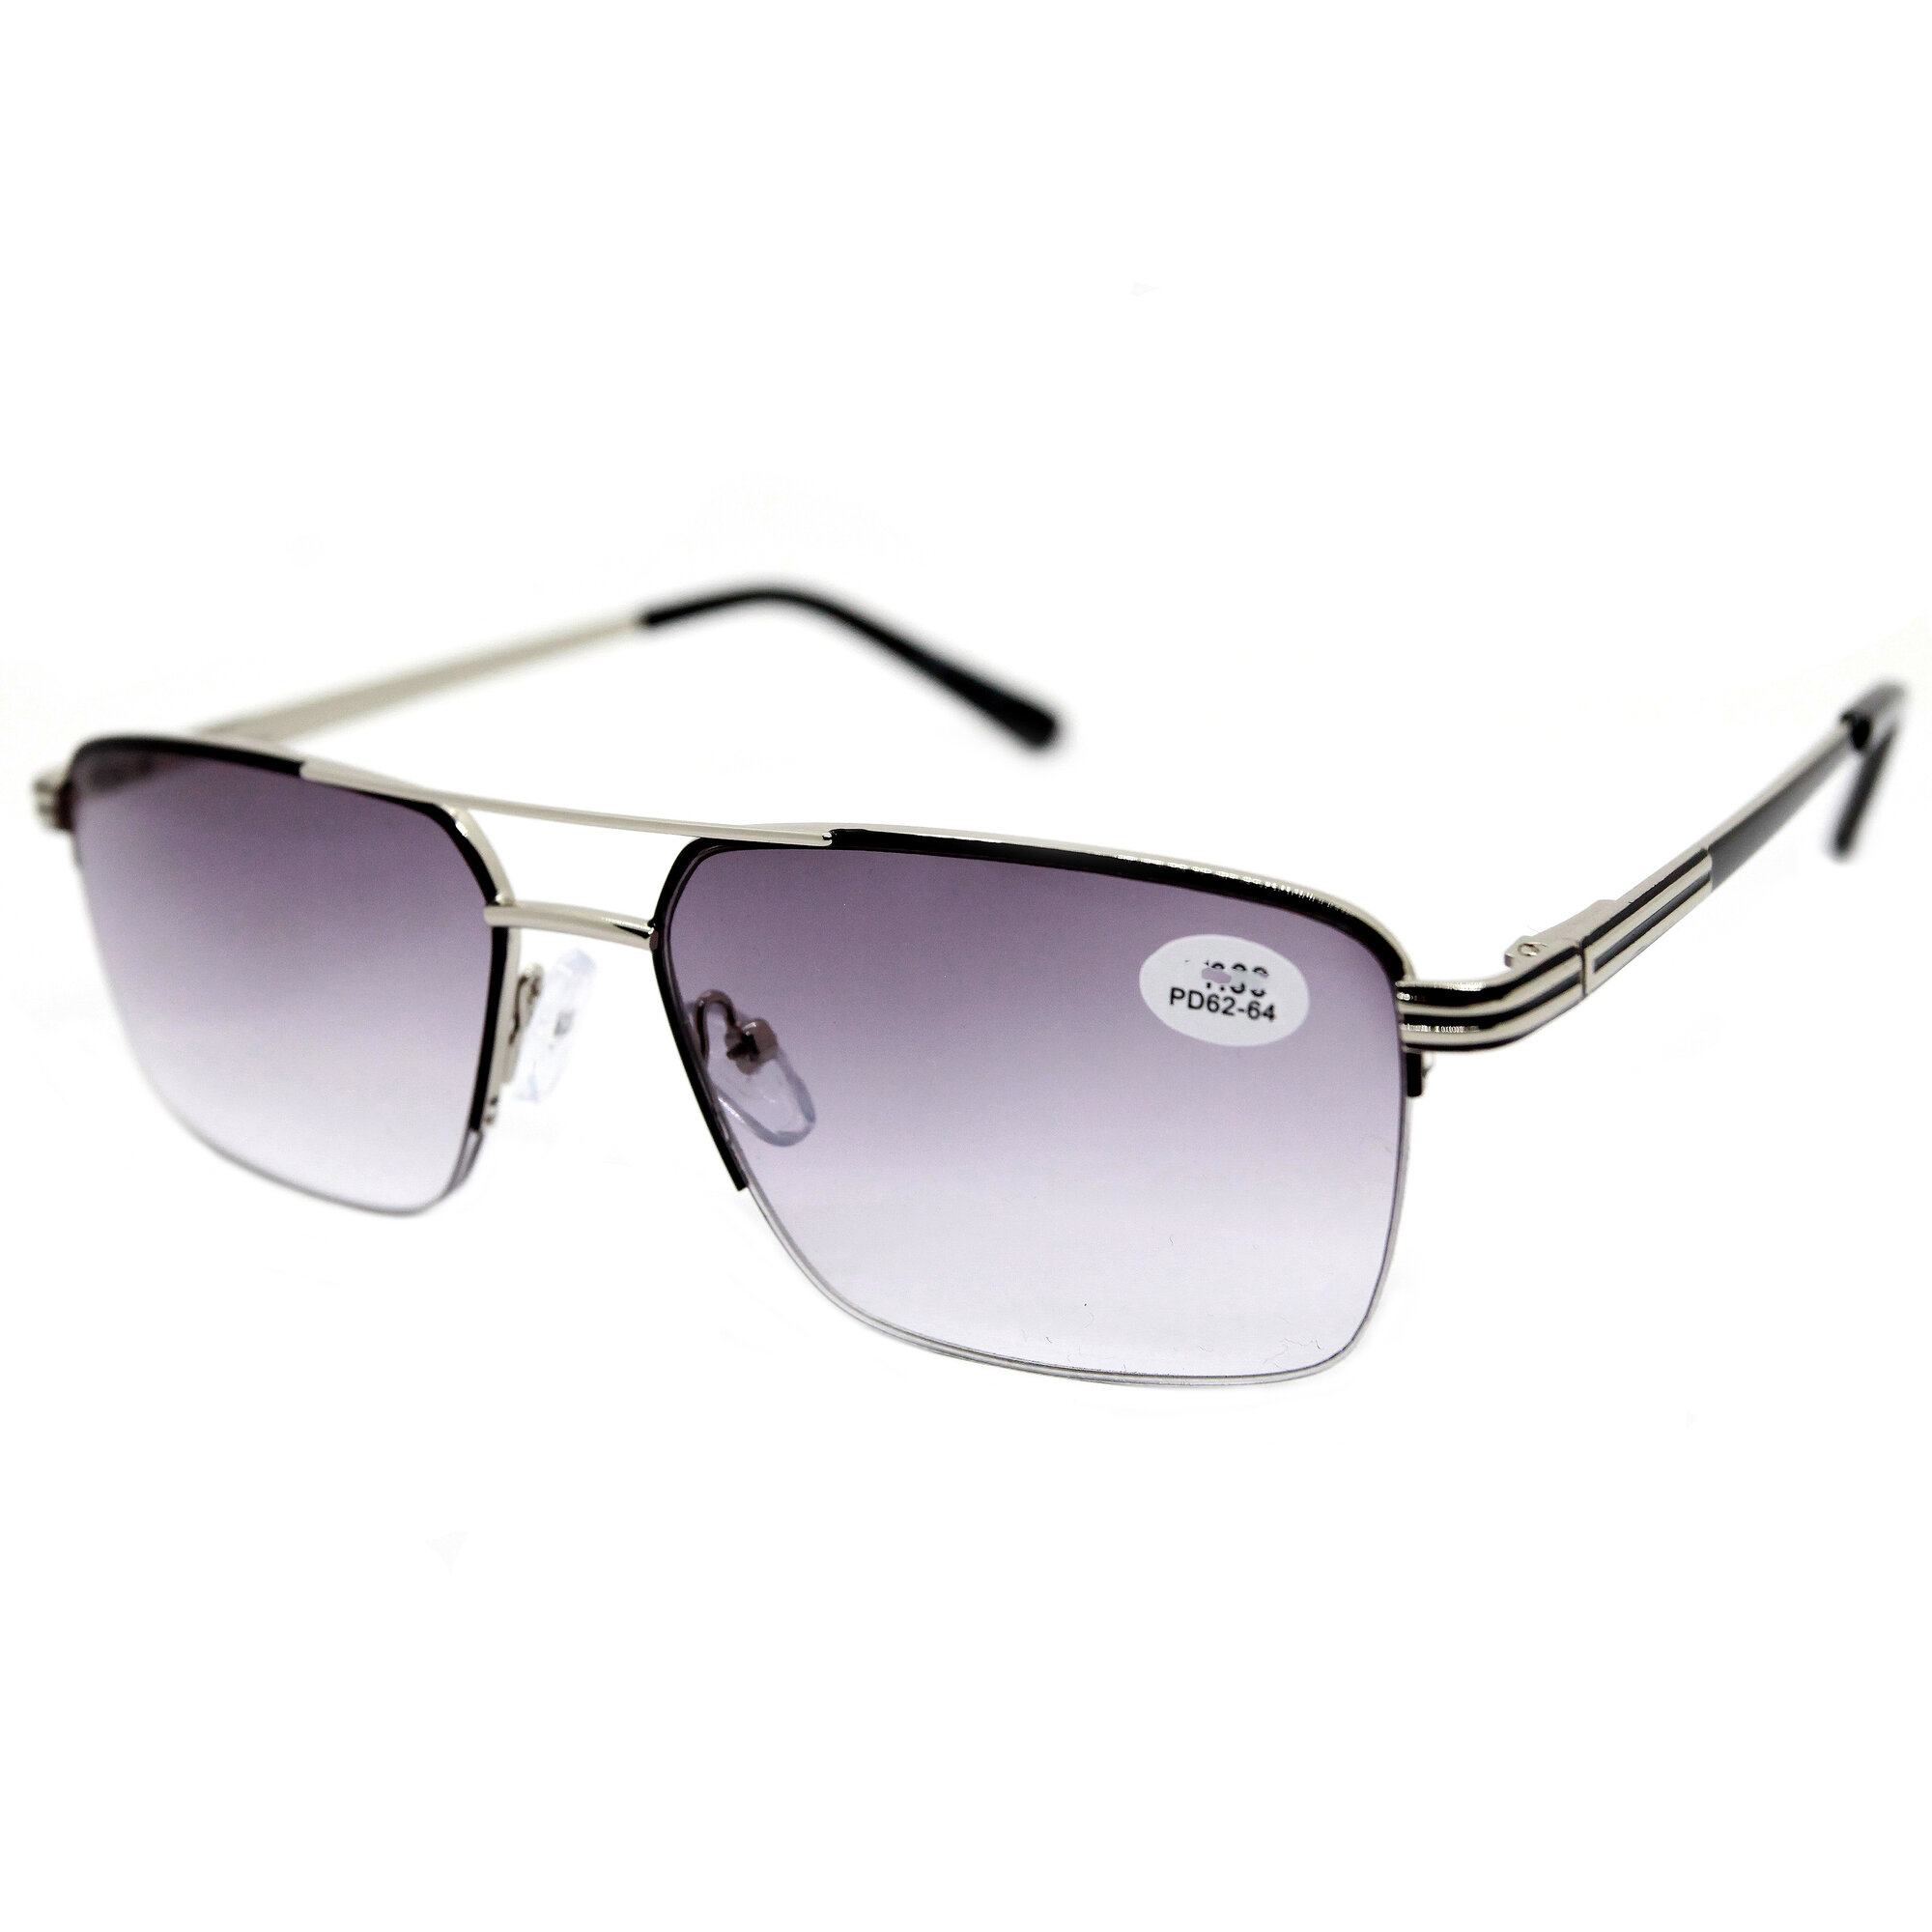 Полуободковые очки мужские женские с тонировкой и UV защитой (-0.75) Glodiatr 1818 C1, цвет черный, тонировка, РЦ 62-64